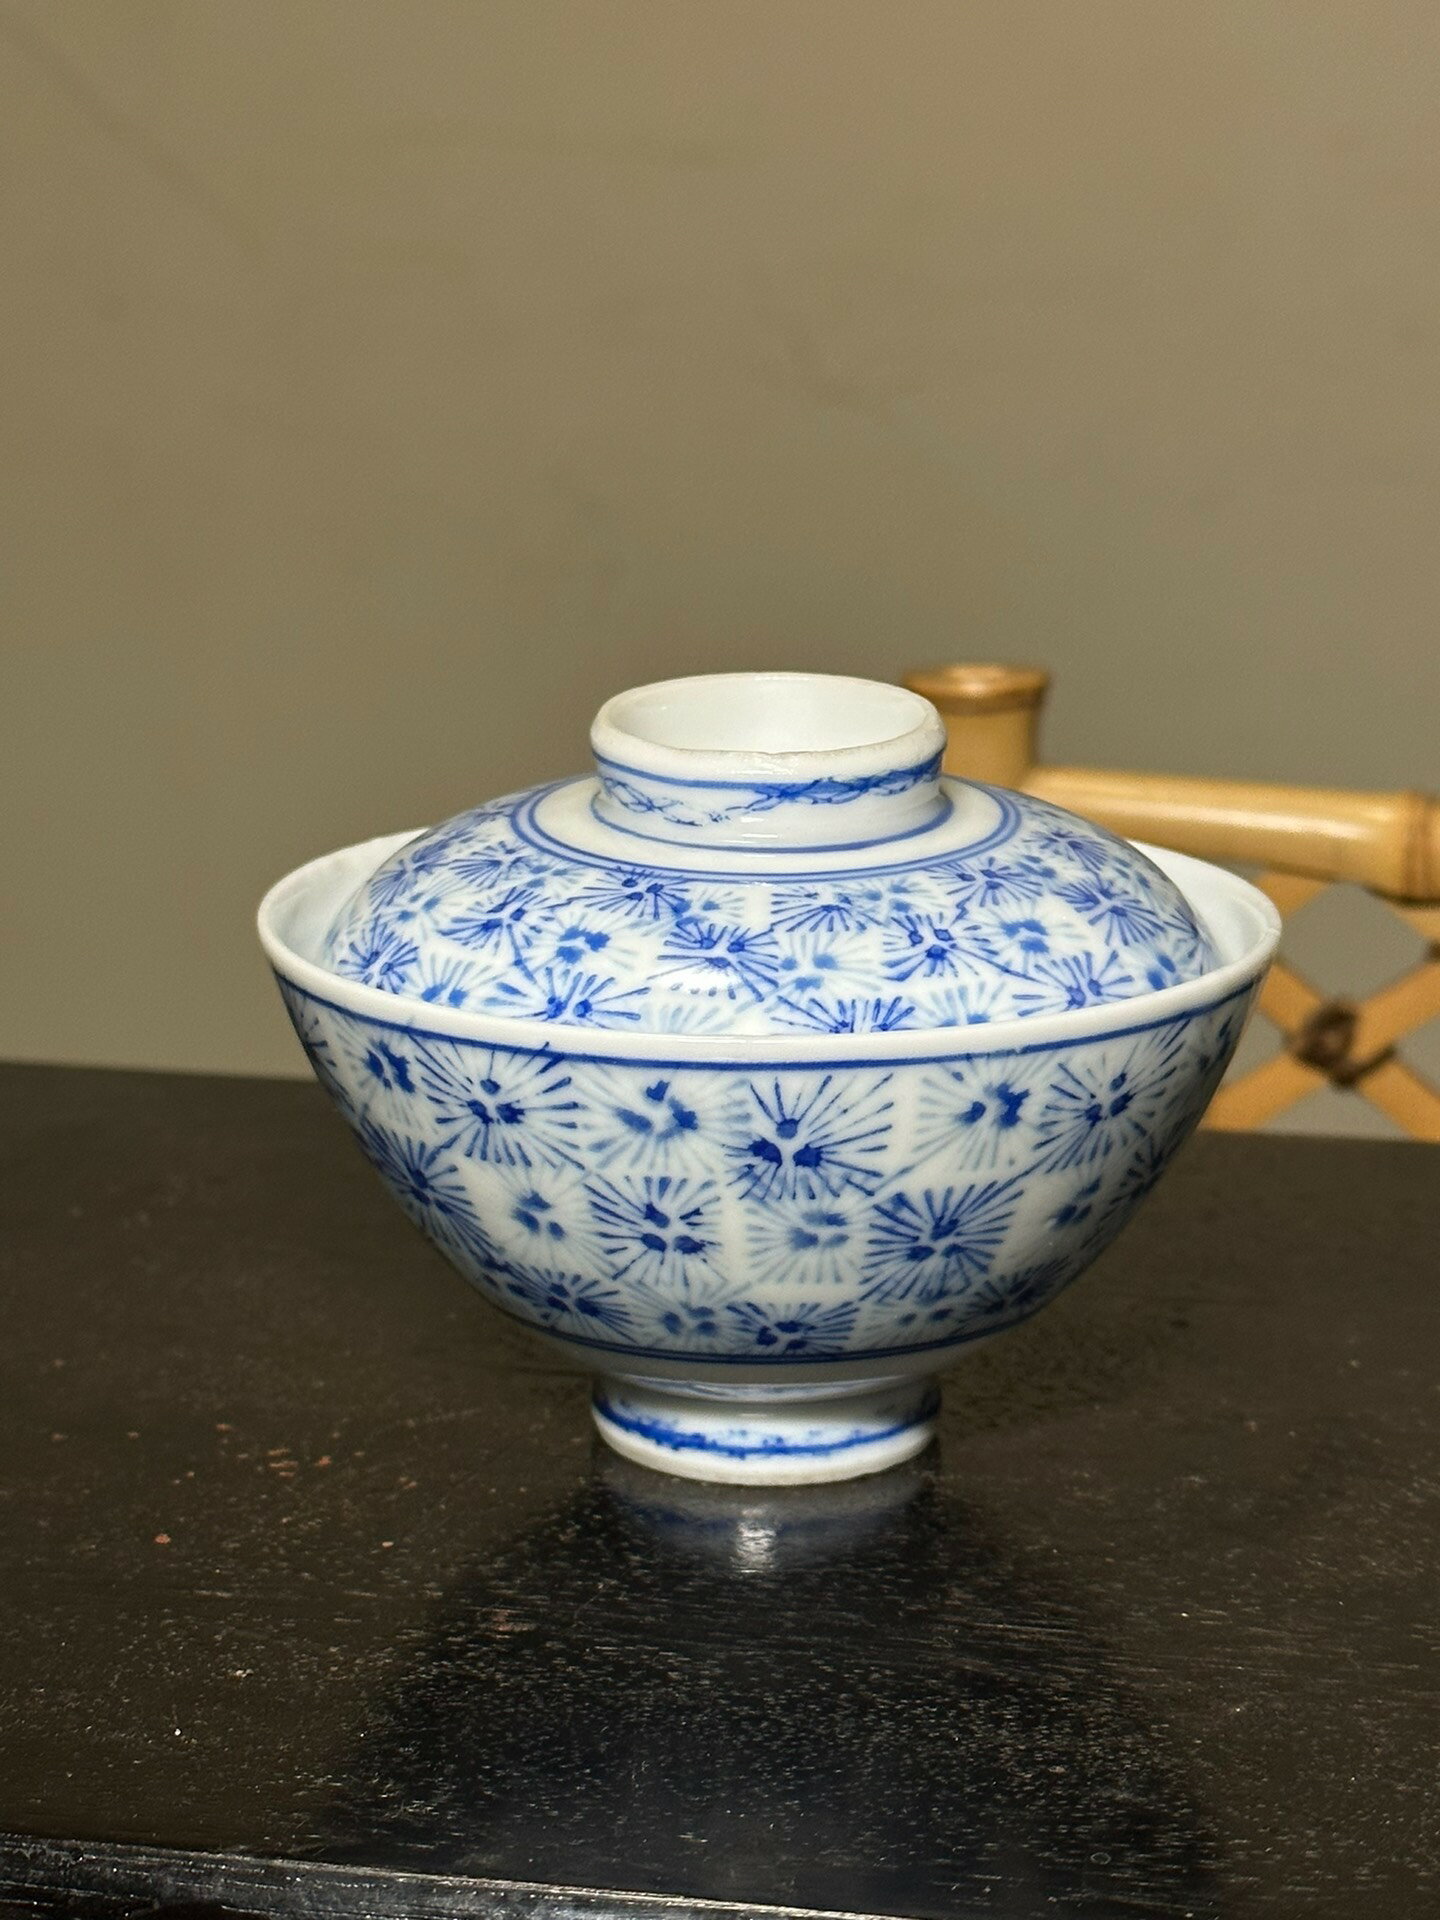 日本中古回流年代物手繪青花功夫茶蓋碗 茶碗